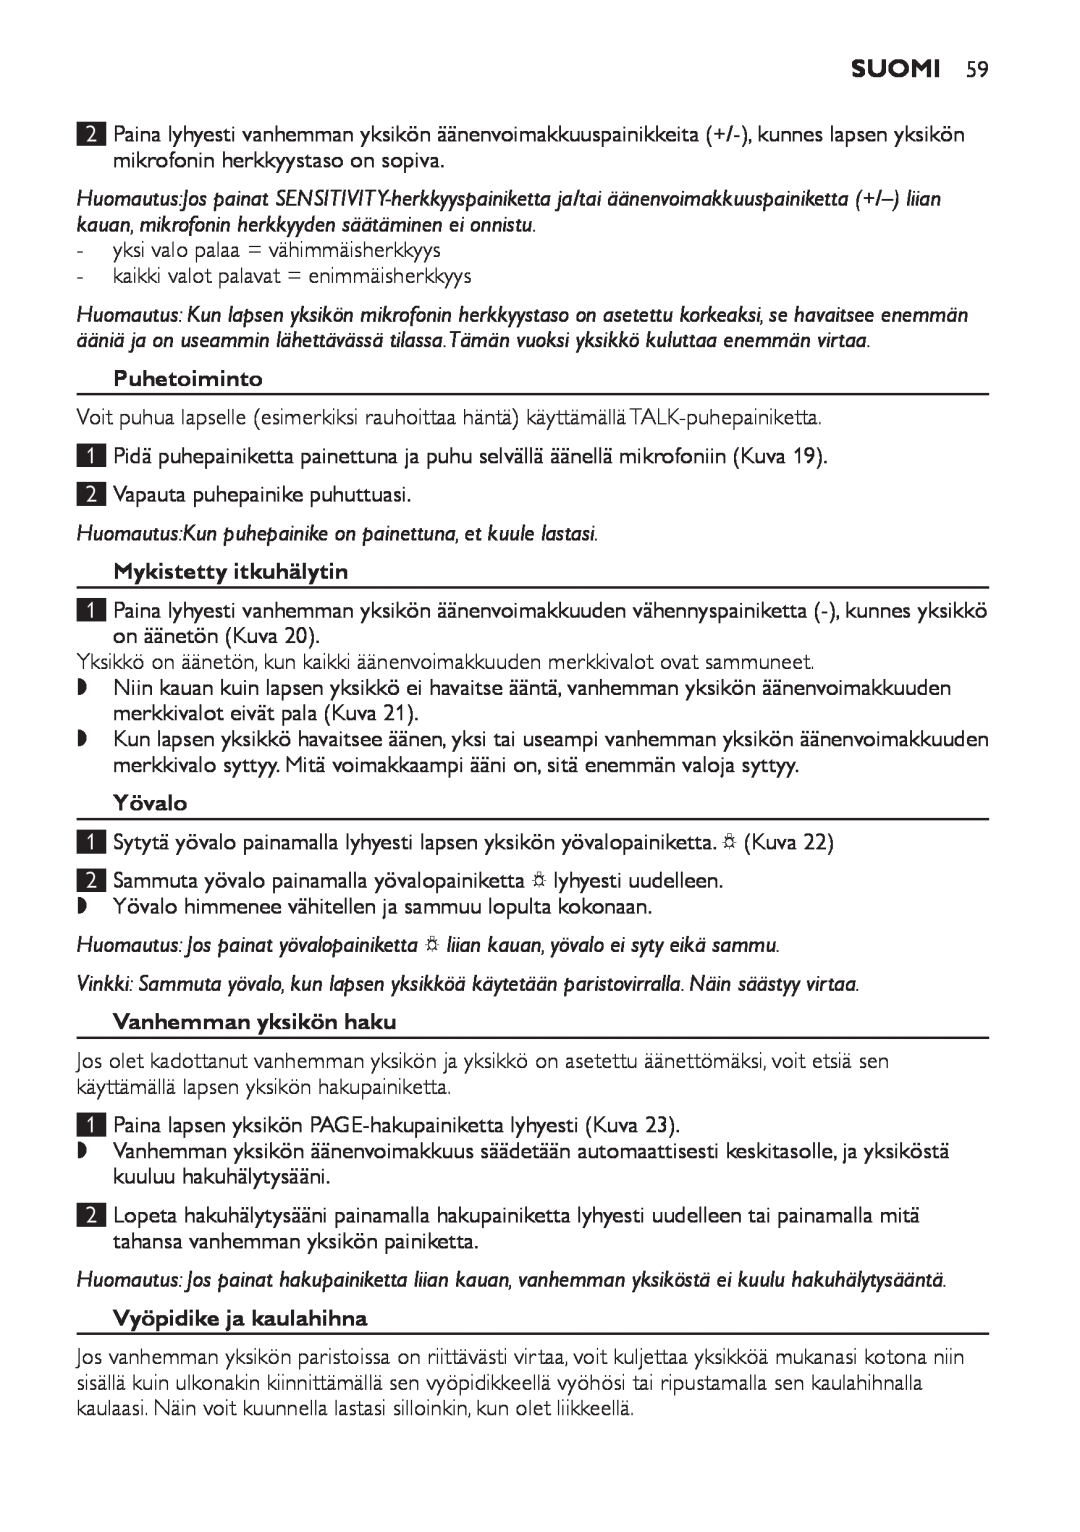 Philips SCD498 manual Puhetoiminto, Mykistetty itkuhälytin, Yövalo, Vanhemman yksikön haku, Vyöpidike ja kaulahihna, Suomi 